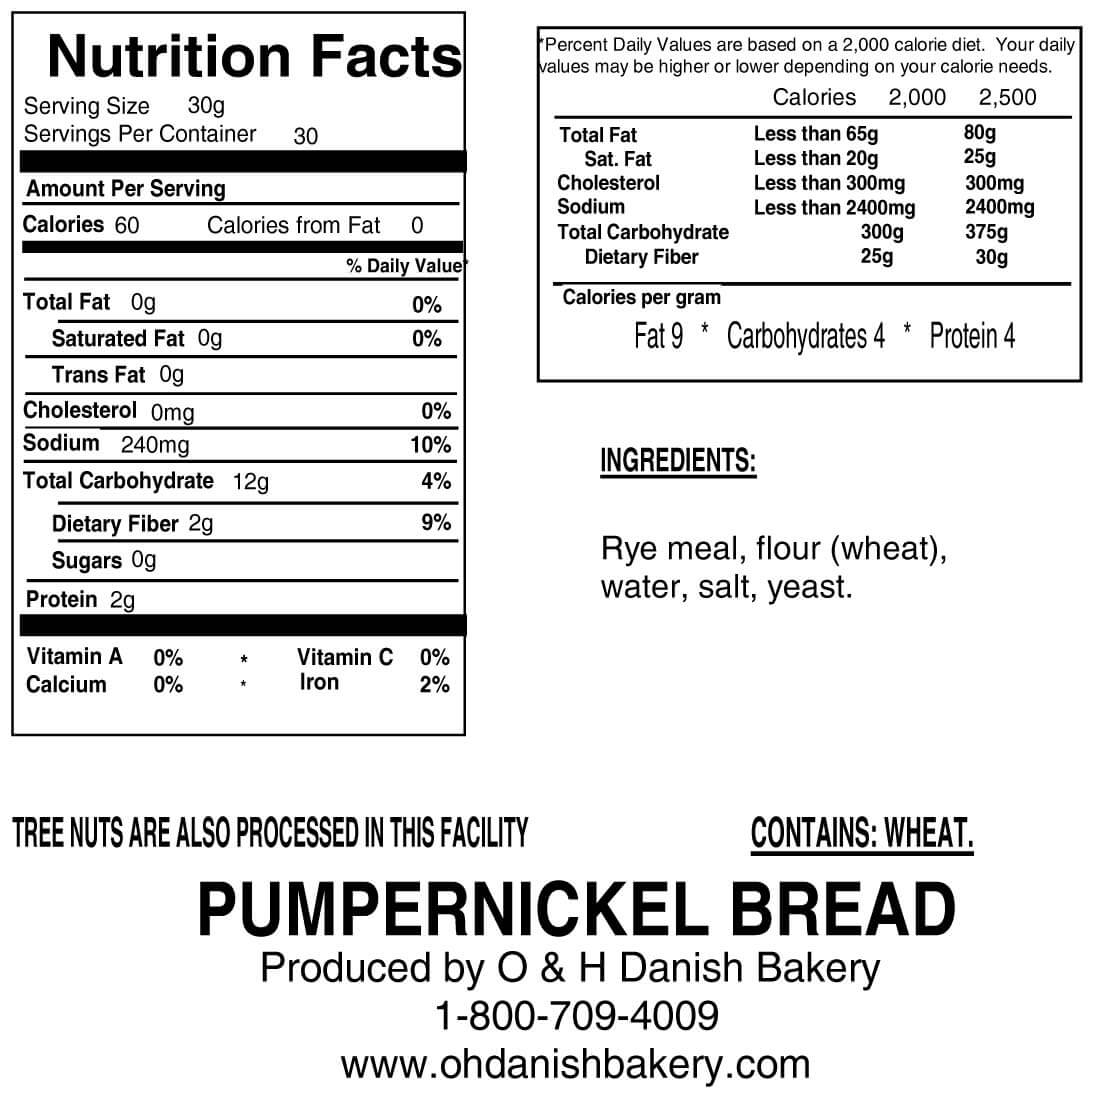 Danish Pumpernickel Bread - O&H Danish Bakery of Racine Wisconsin